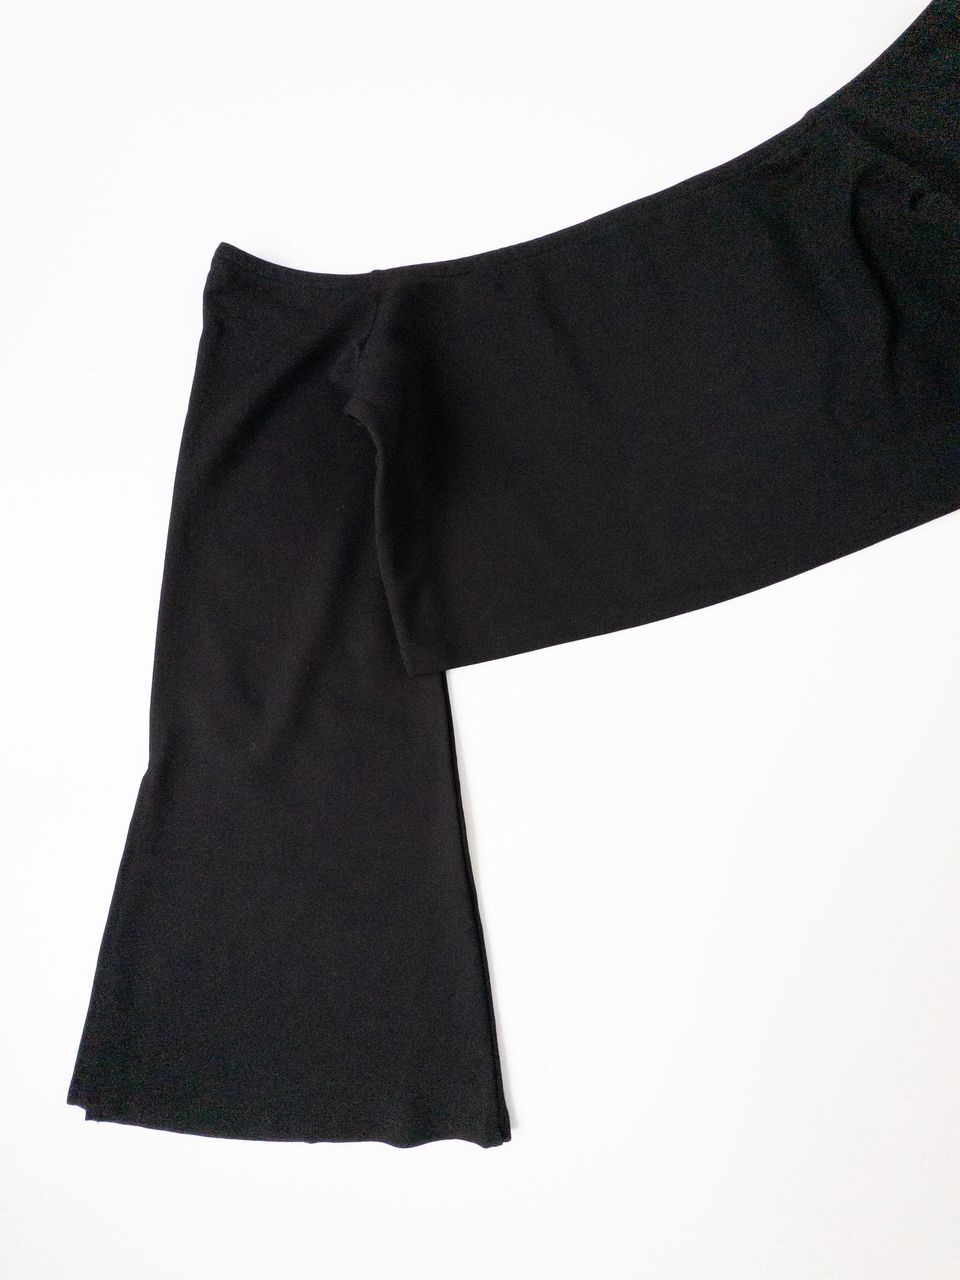 Топ укороченный с вырезом кармен и расклешенным рукавом с разрезами вискоза 70% цвет черный размер XL (48-50 RUS) NA-KD